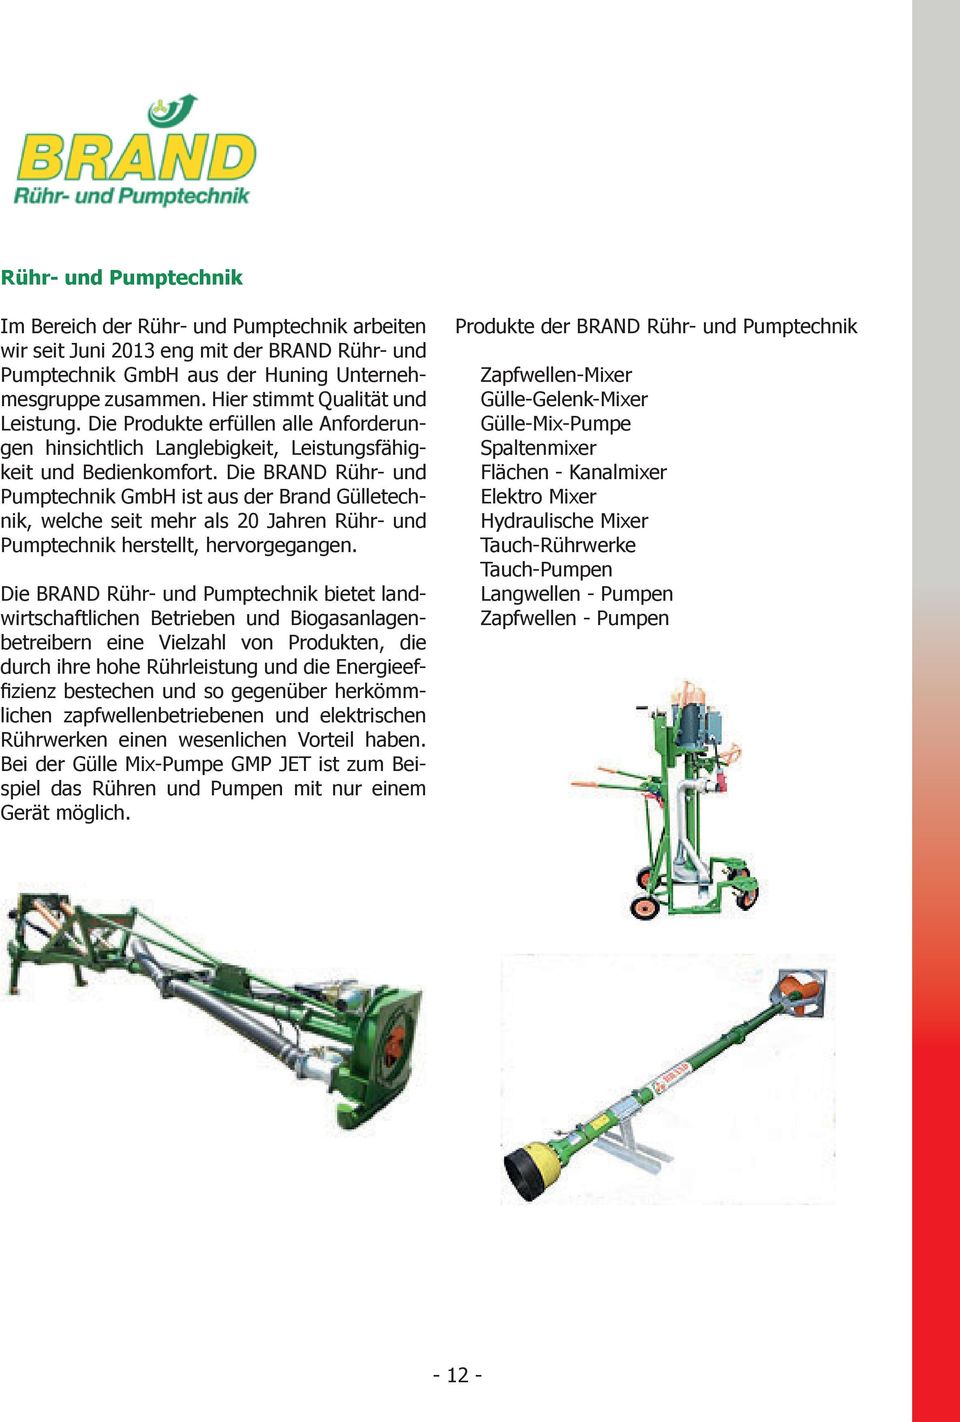 Die BRAND Rühr- und Pumptechnik GmbH ist aus der Brand Gülletechnik, welche seit mehr als 20 Jahren Rühr- und Pumptechnik herstellt, hervorgegangen.